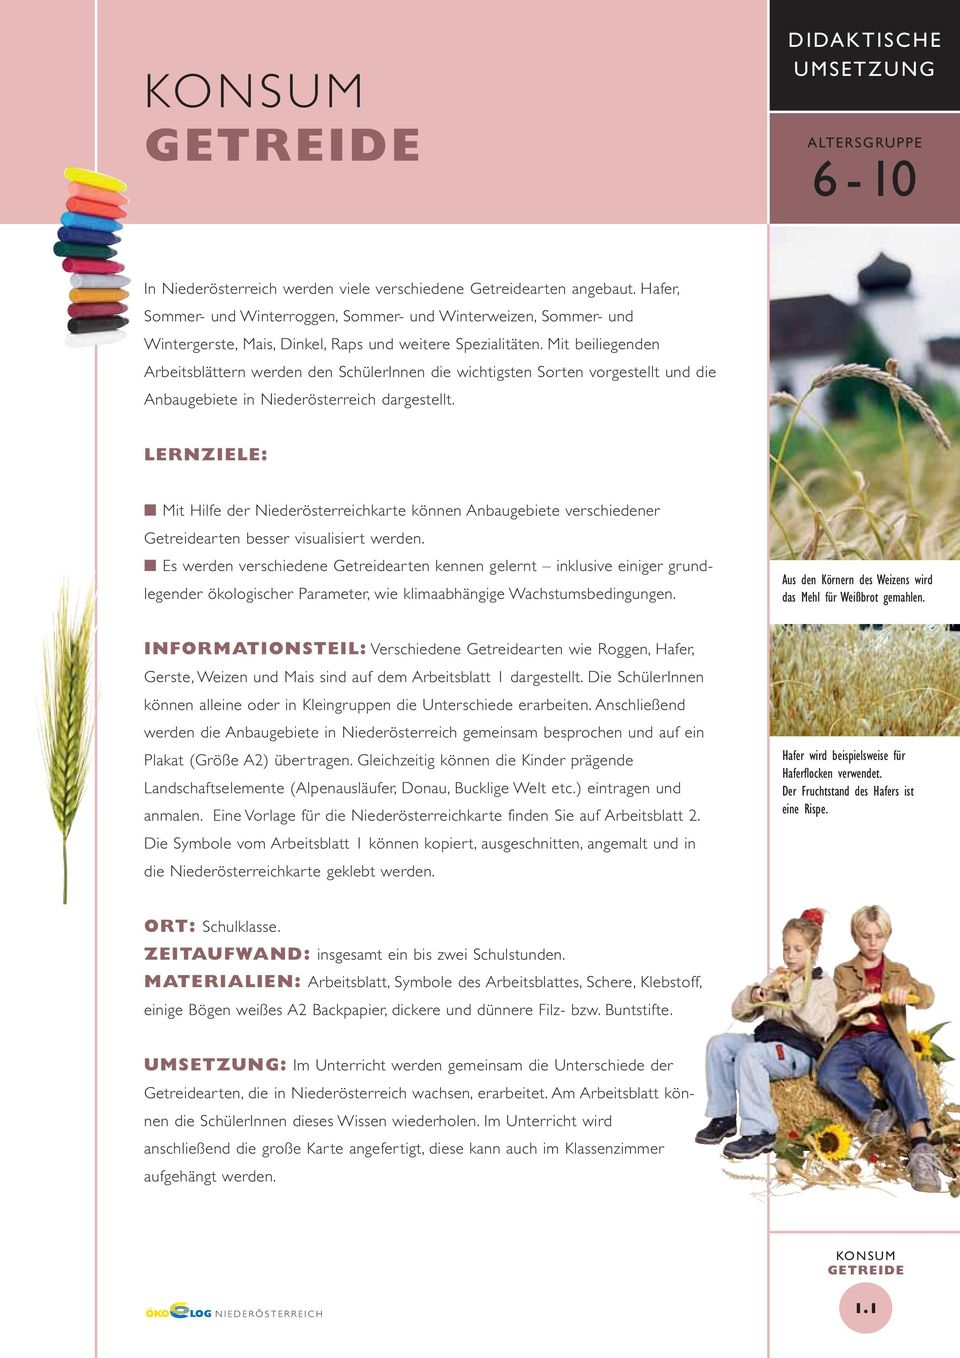 Mit beiliegenden Arbeitsblättern werden den SchülerInnen die wichtigsten Sorten vorgestellt und die Anbaugebiete in Niederösterreich dargestellt.